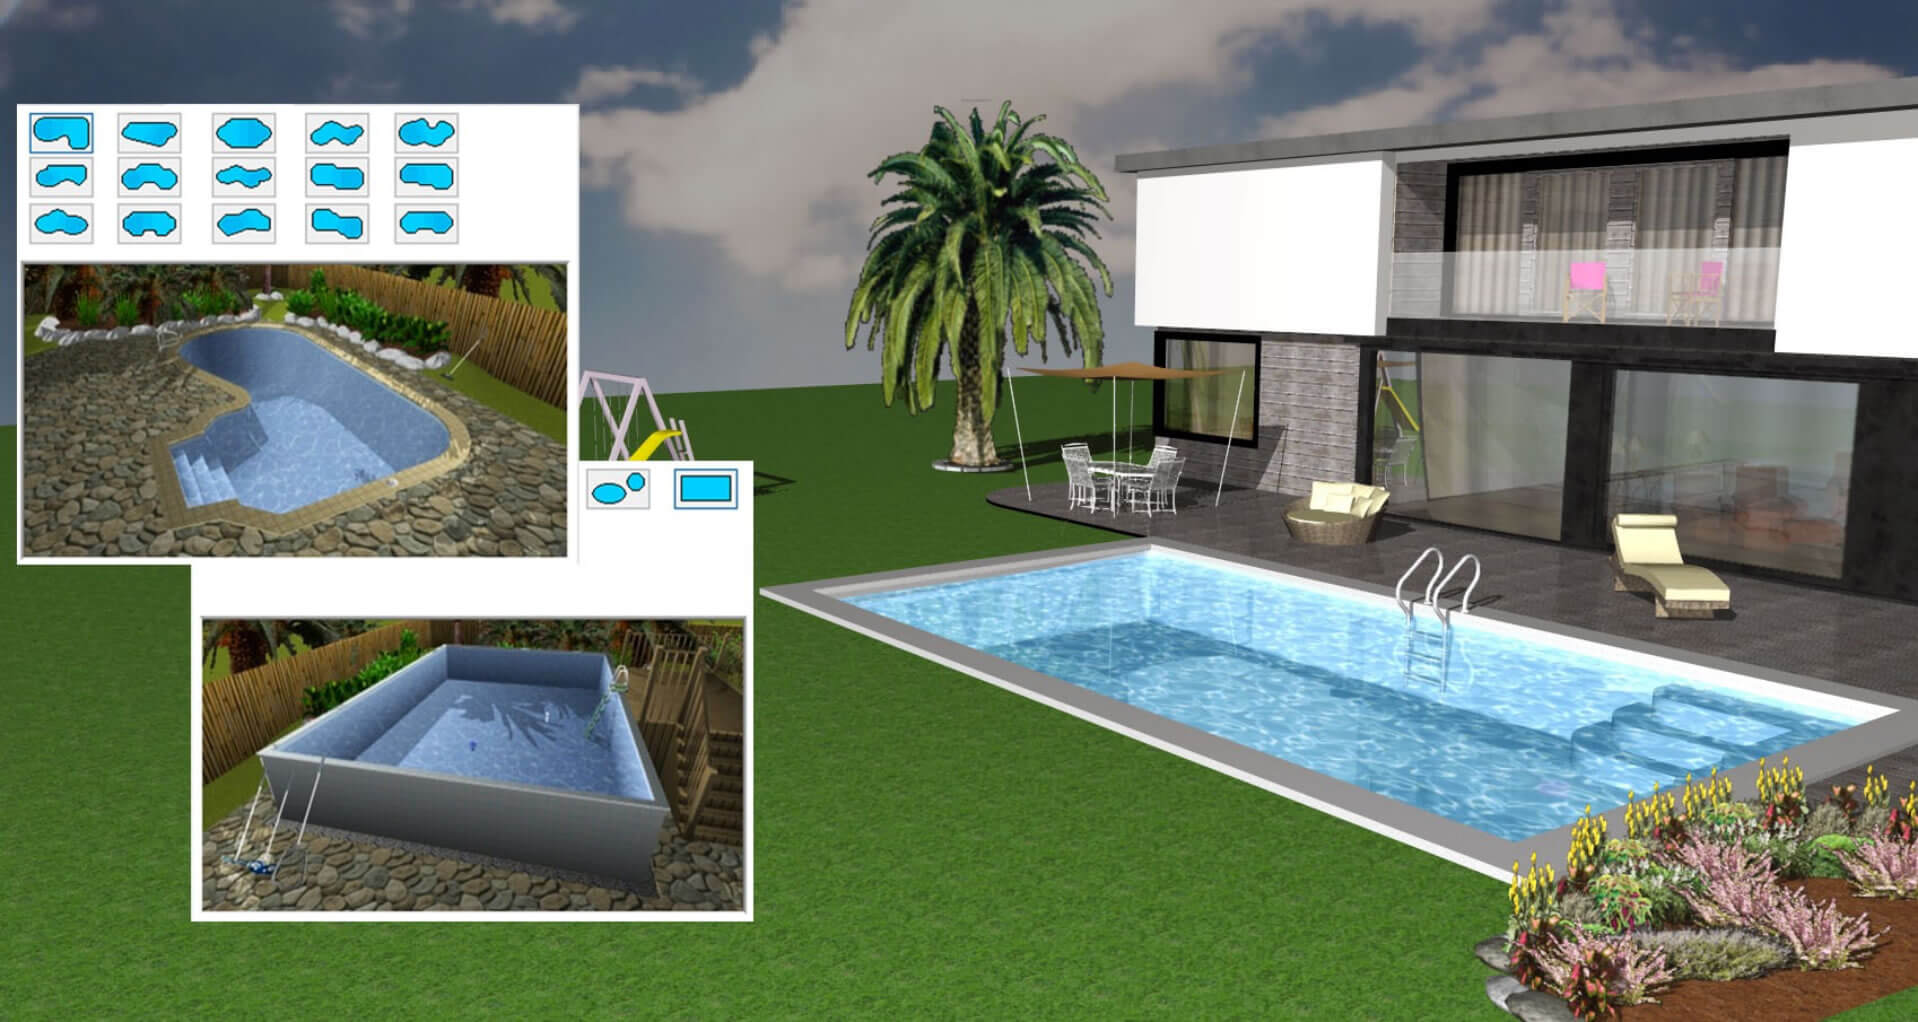 Créez très facilement la piscine de vos rêves grâce avec l’éditeur de piscines intégré à Architecte 3D®.